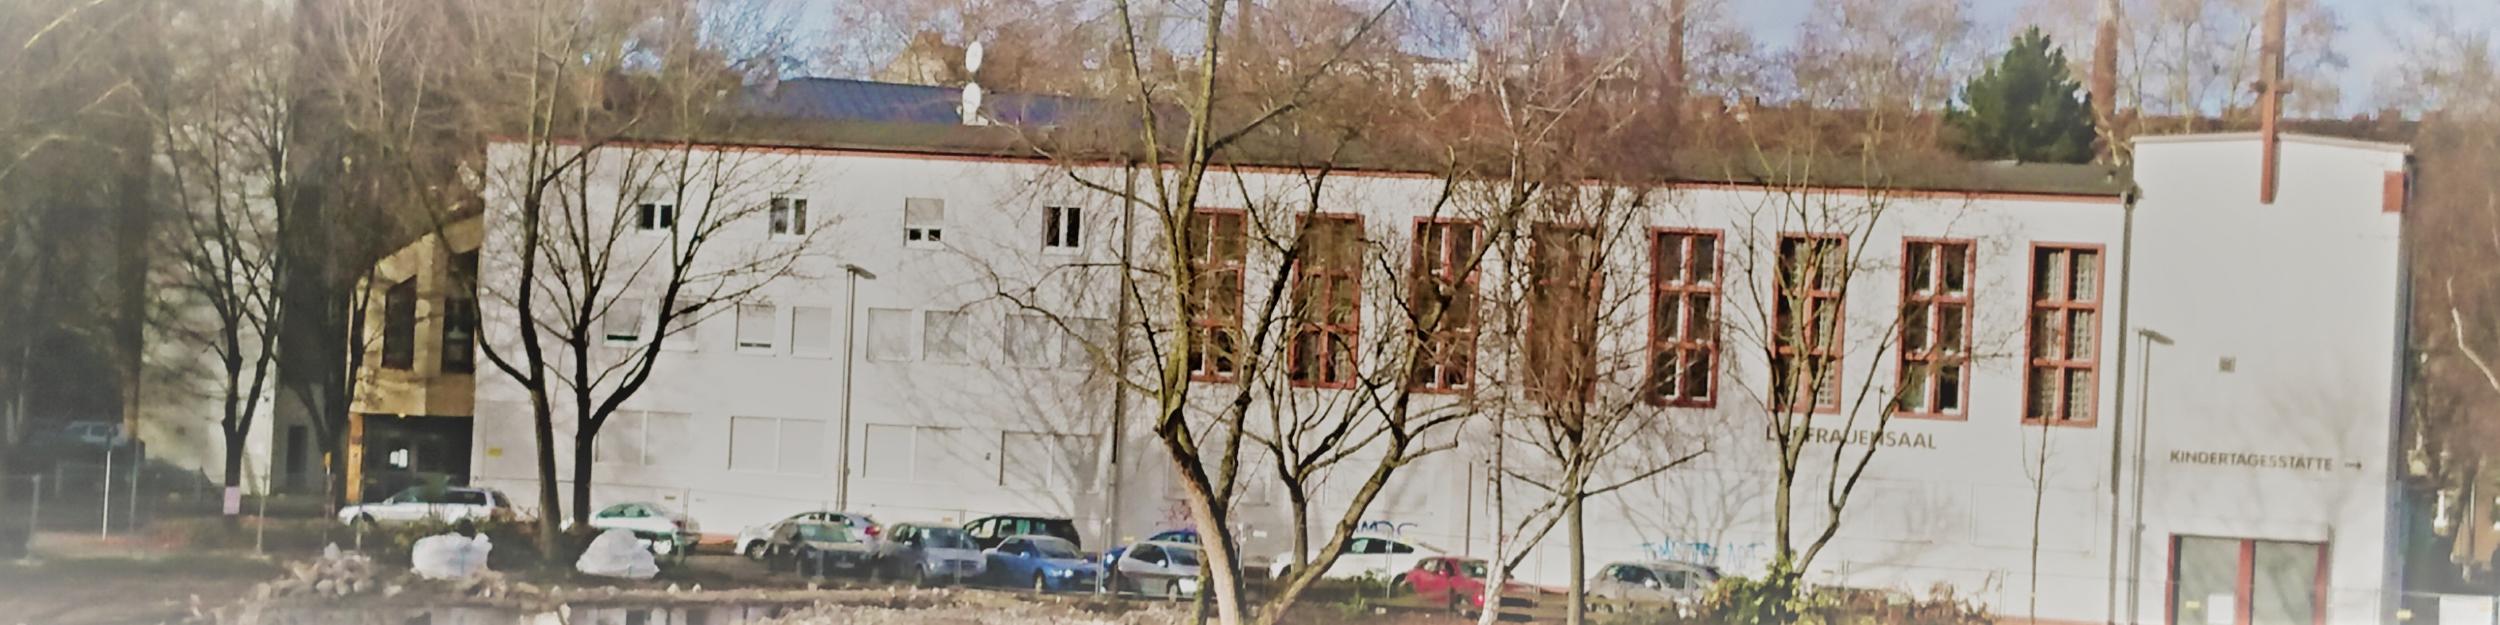 Liebfrauen - Gemeindehaus